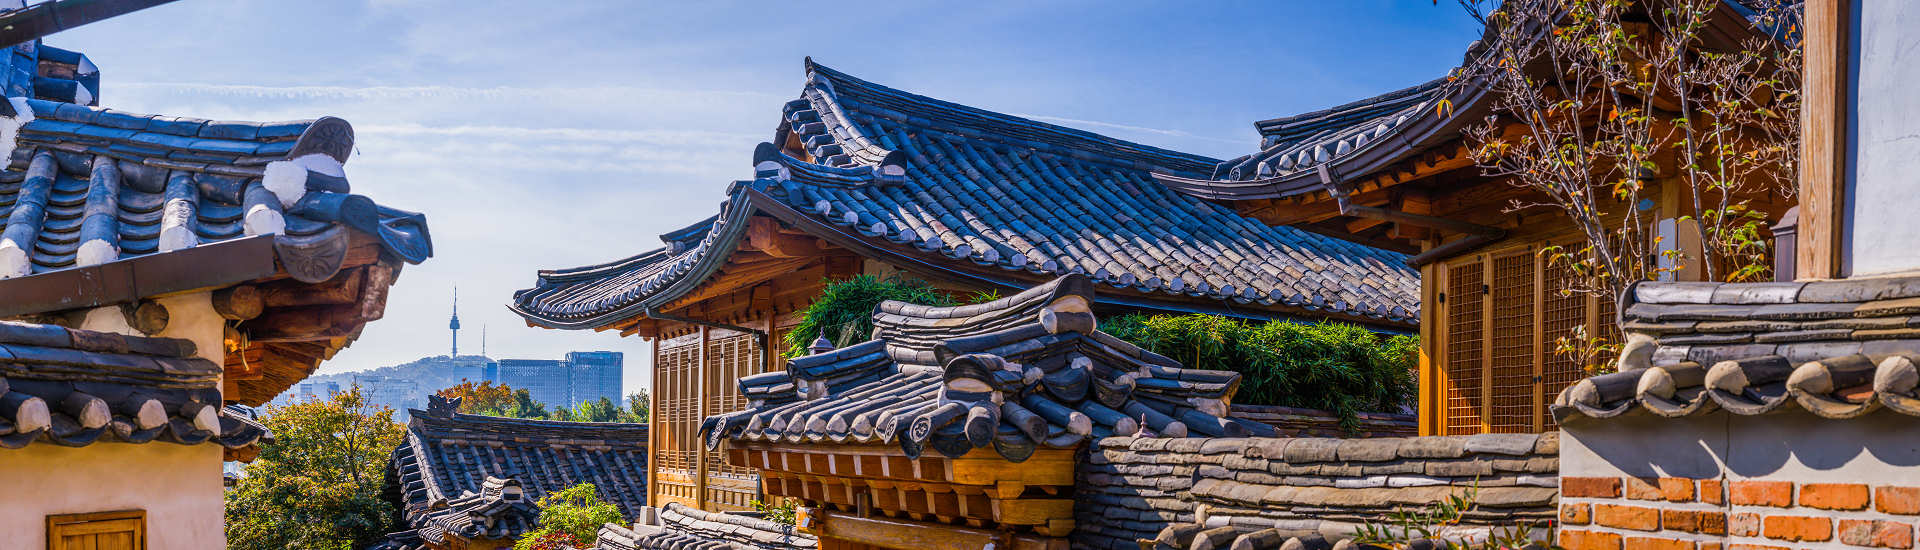 Frühlingslandschaft in Südkorea mit blühenden Kirschbäumen und traditionellen koreanischen Häusern mit blauen Dächern.